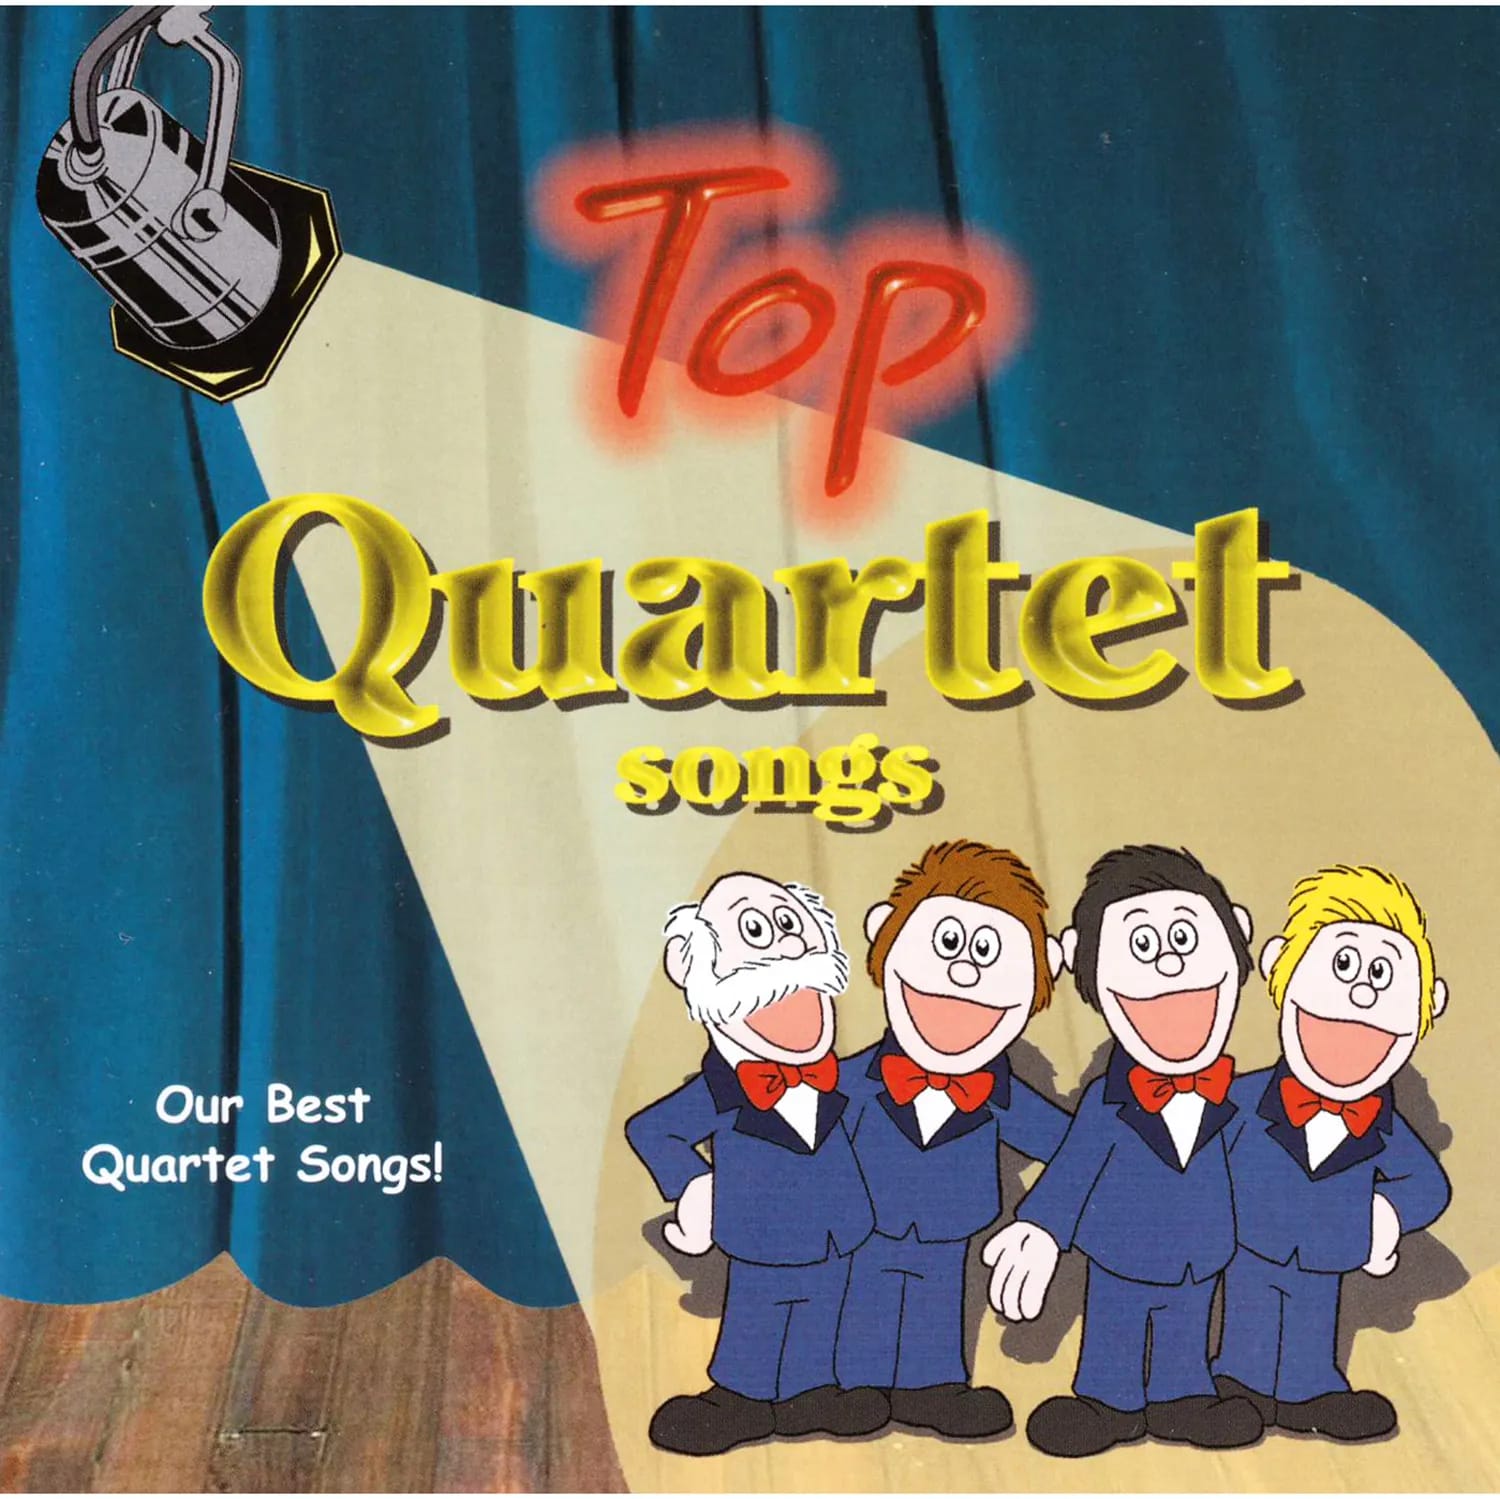 Top Quartet Songs